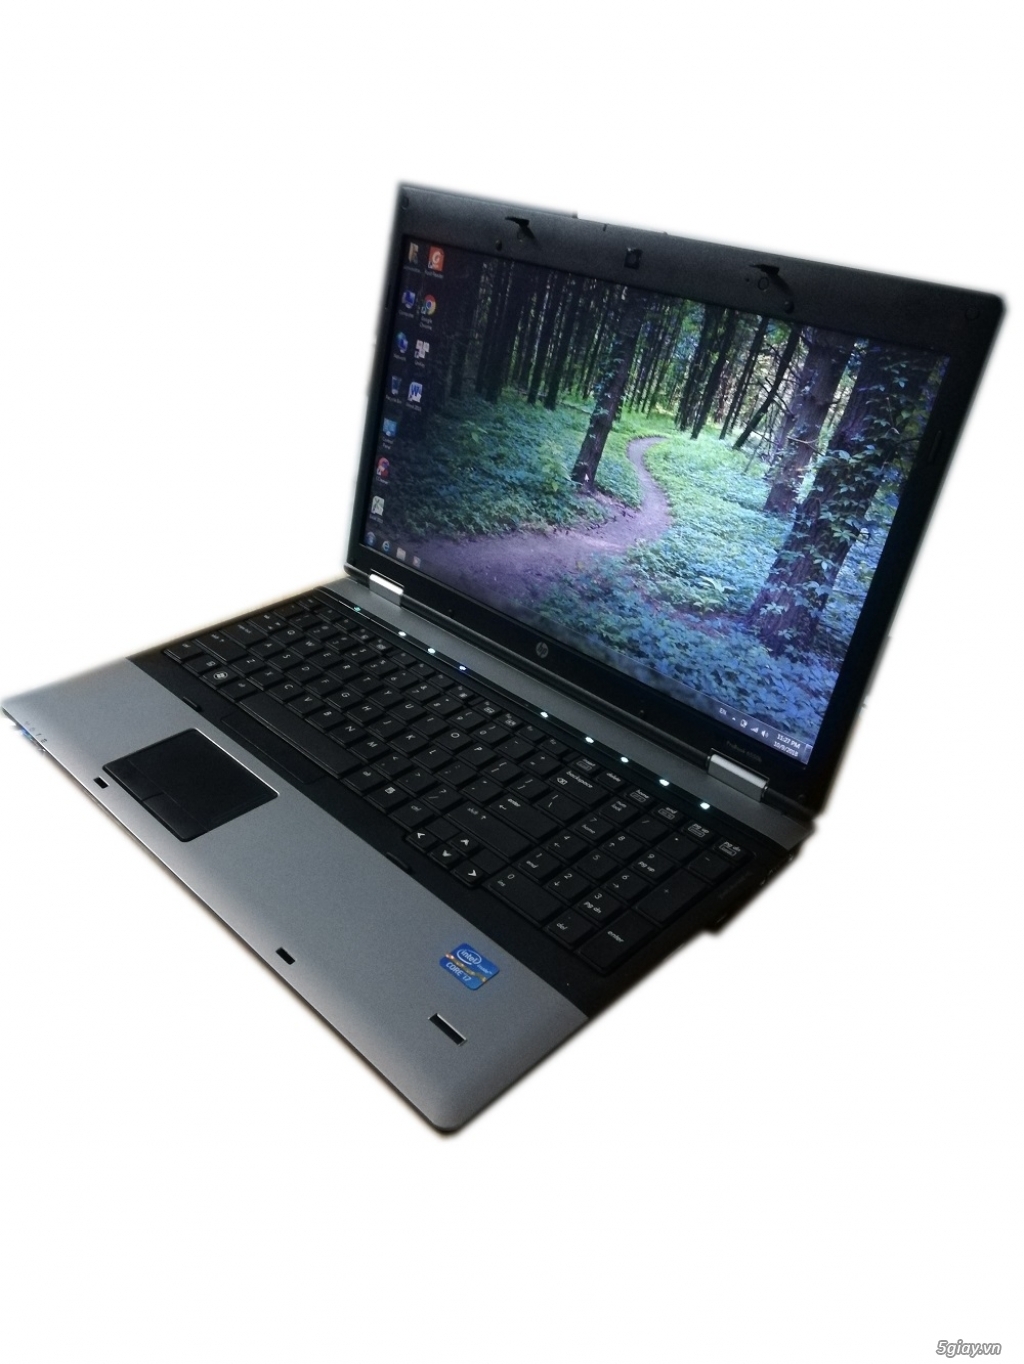 Laptop HP  Probook I7, ram 4g, hdd 250g - 2